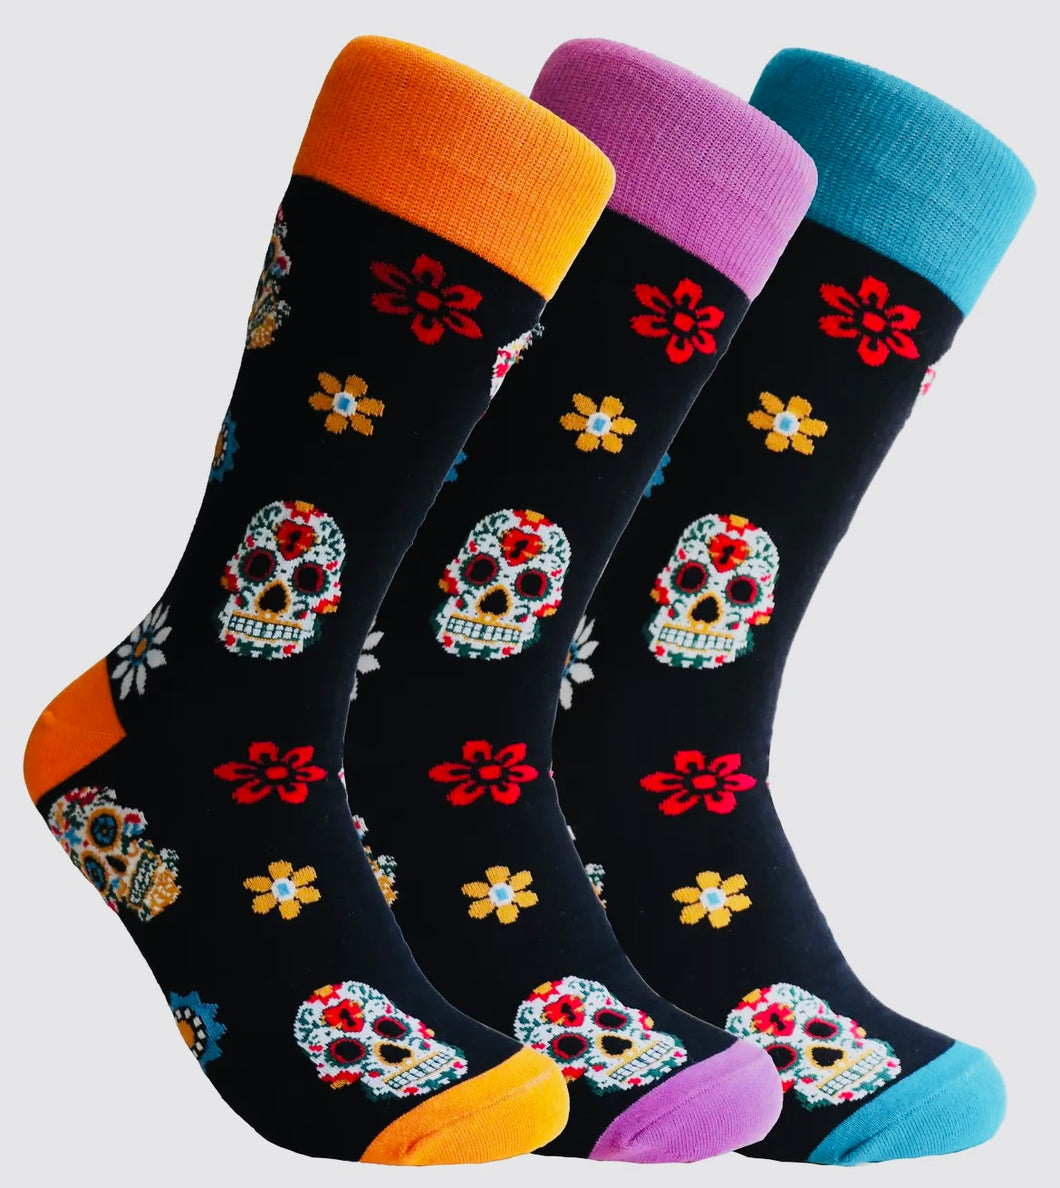 SOCKS - Women's Calavera Skull Socks